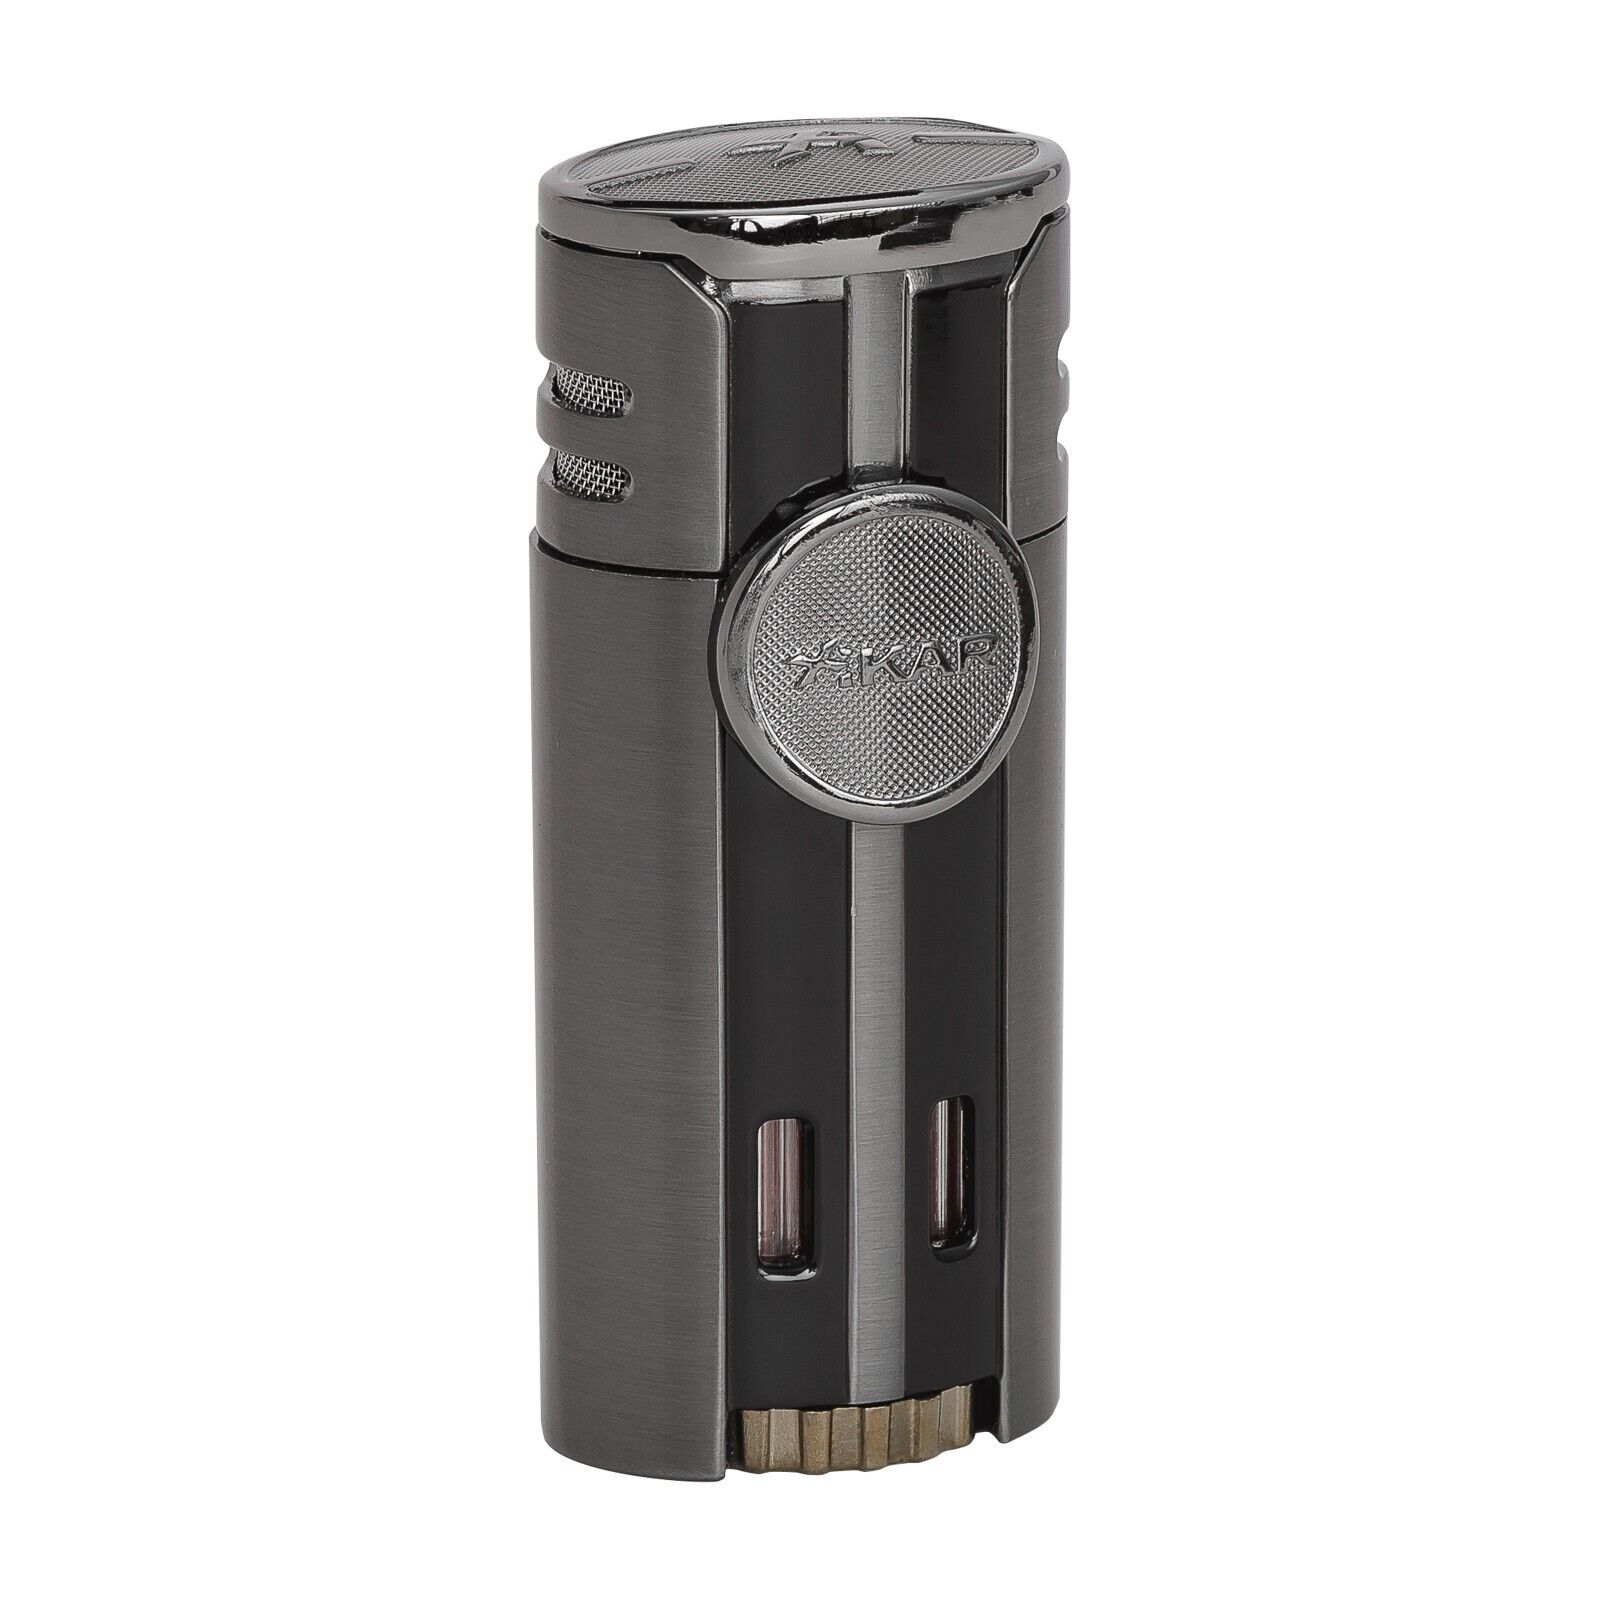 Xikar HP4 Quad Cigar Lighter, Four-Angled Jet Flame, Flame Adjuster, Gunmetal